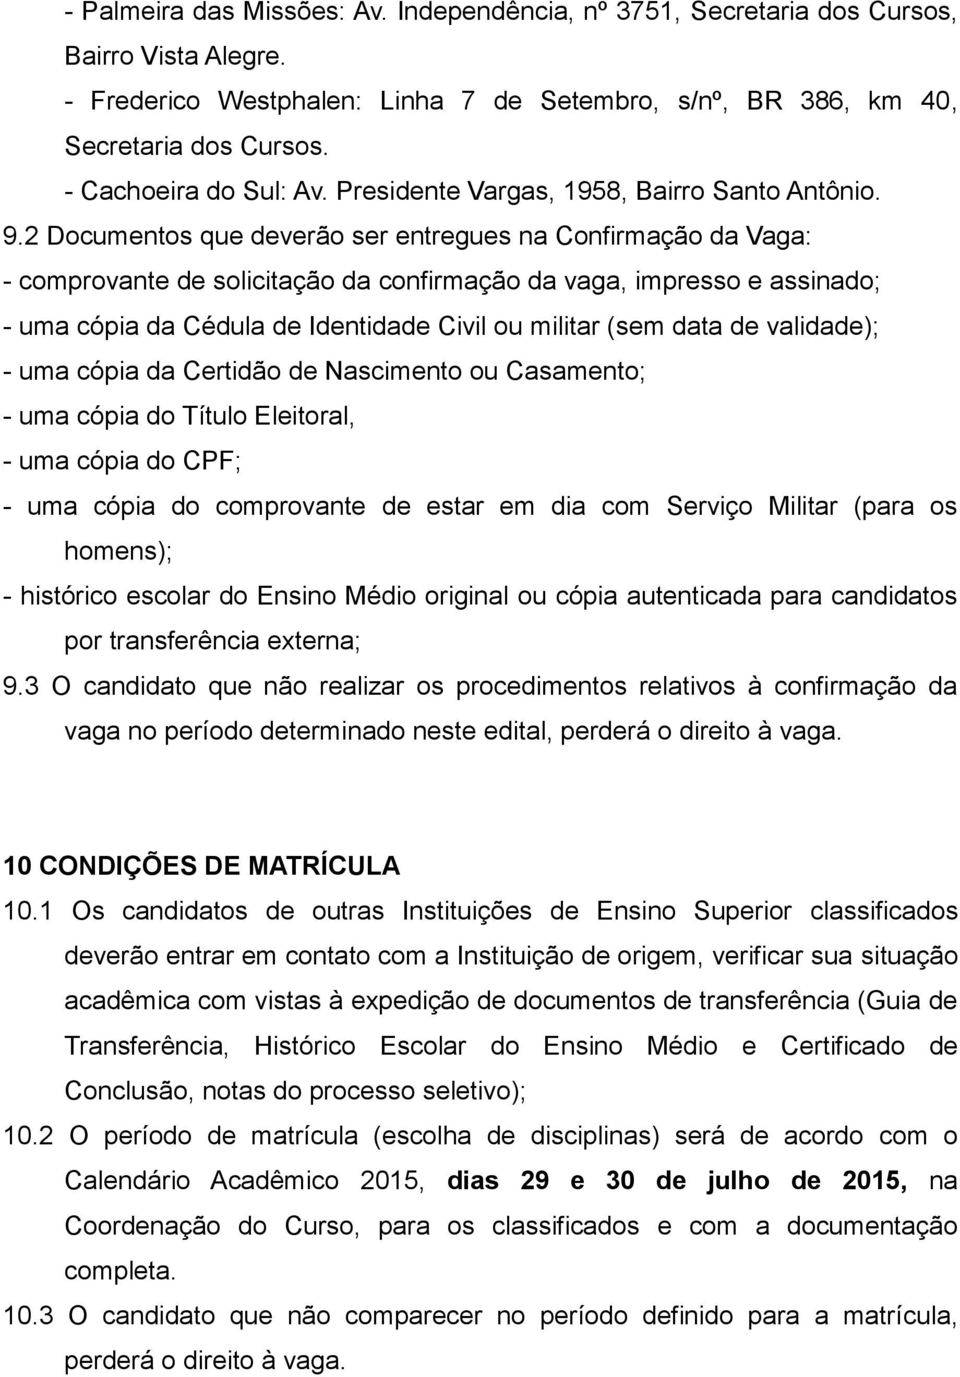 2 Documentos que deverão ser entregues na Confirmação da Vaga: - comprovante de solicitação da confirmação da vaga, impresso e assinado; - uma cópia da Cédula de Identidade Civil ou militar (sem data